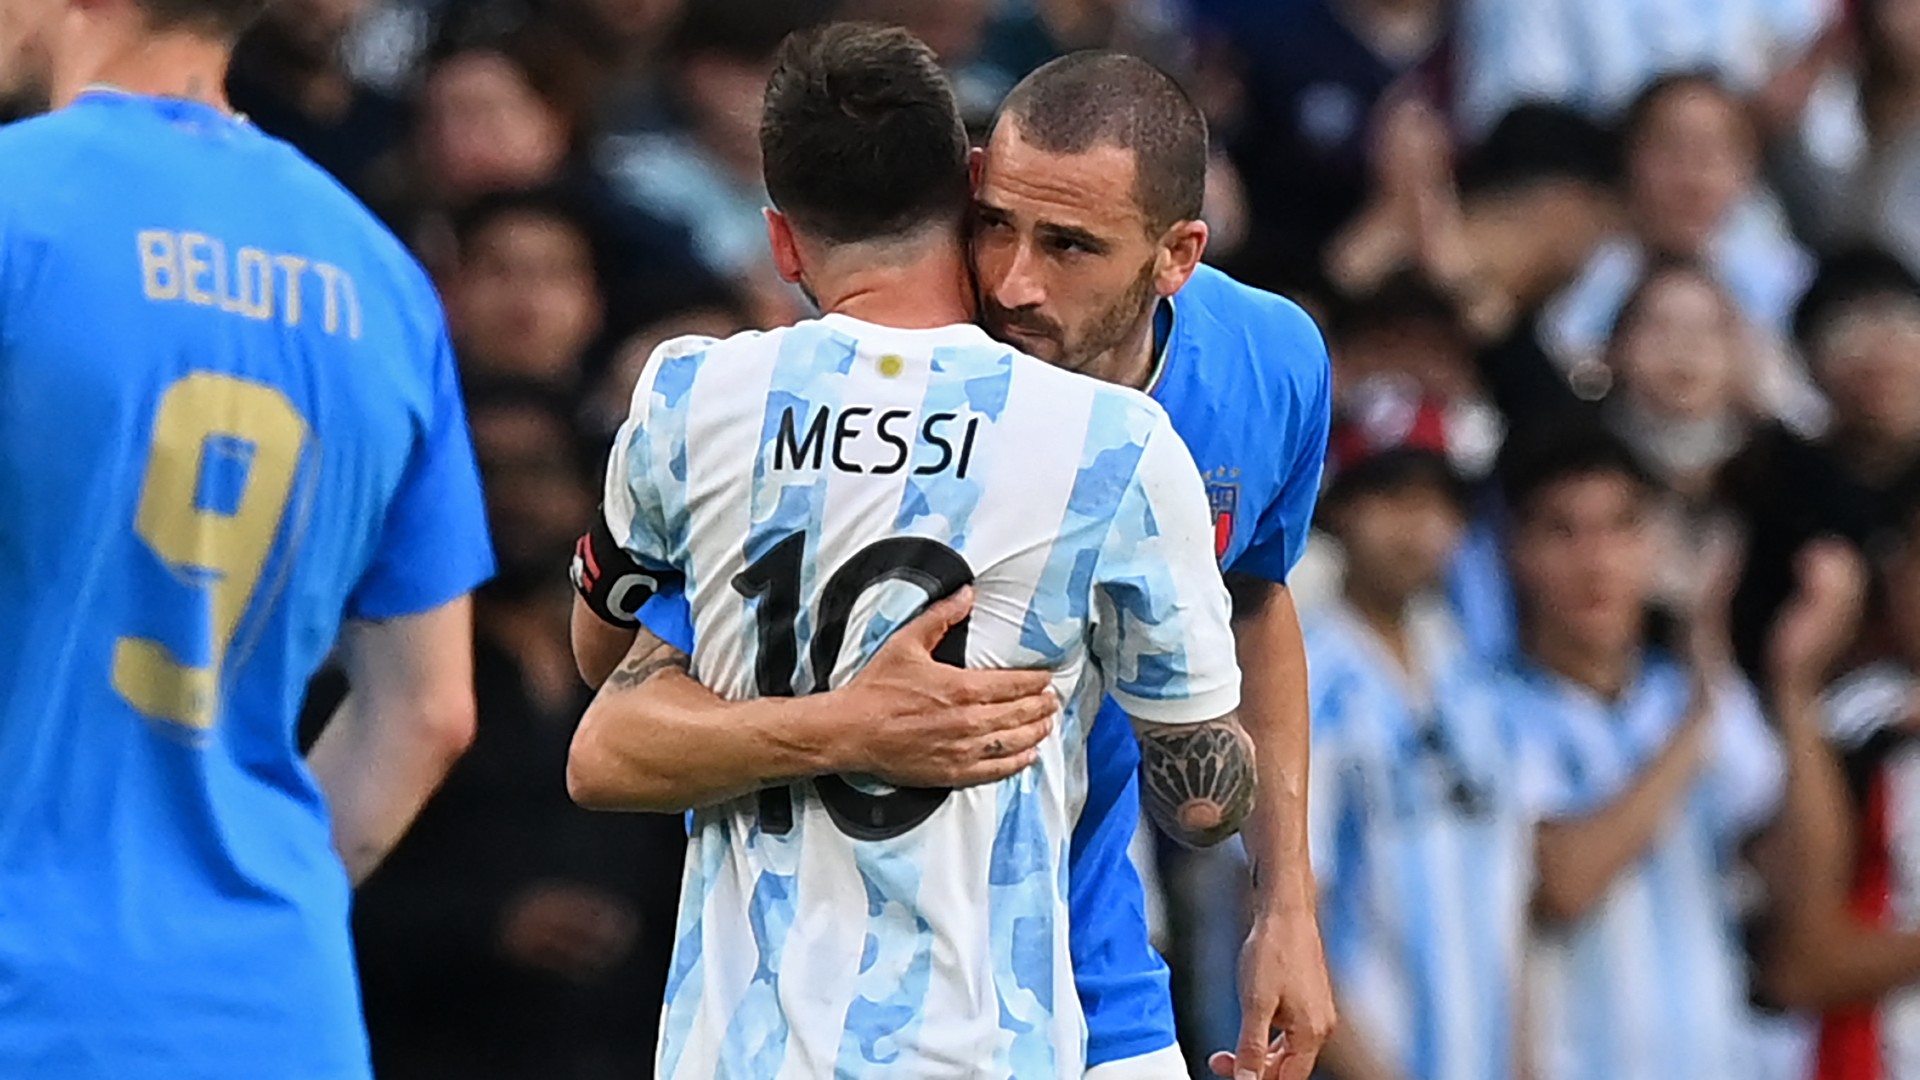 Italia-Argentina, pagelle: disastro Bonucci, Messi show